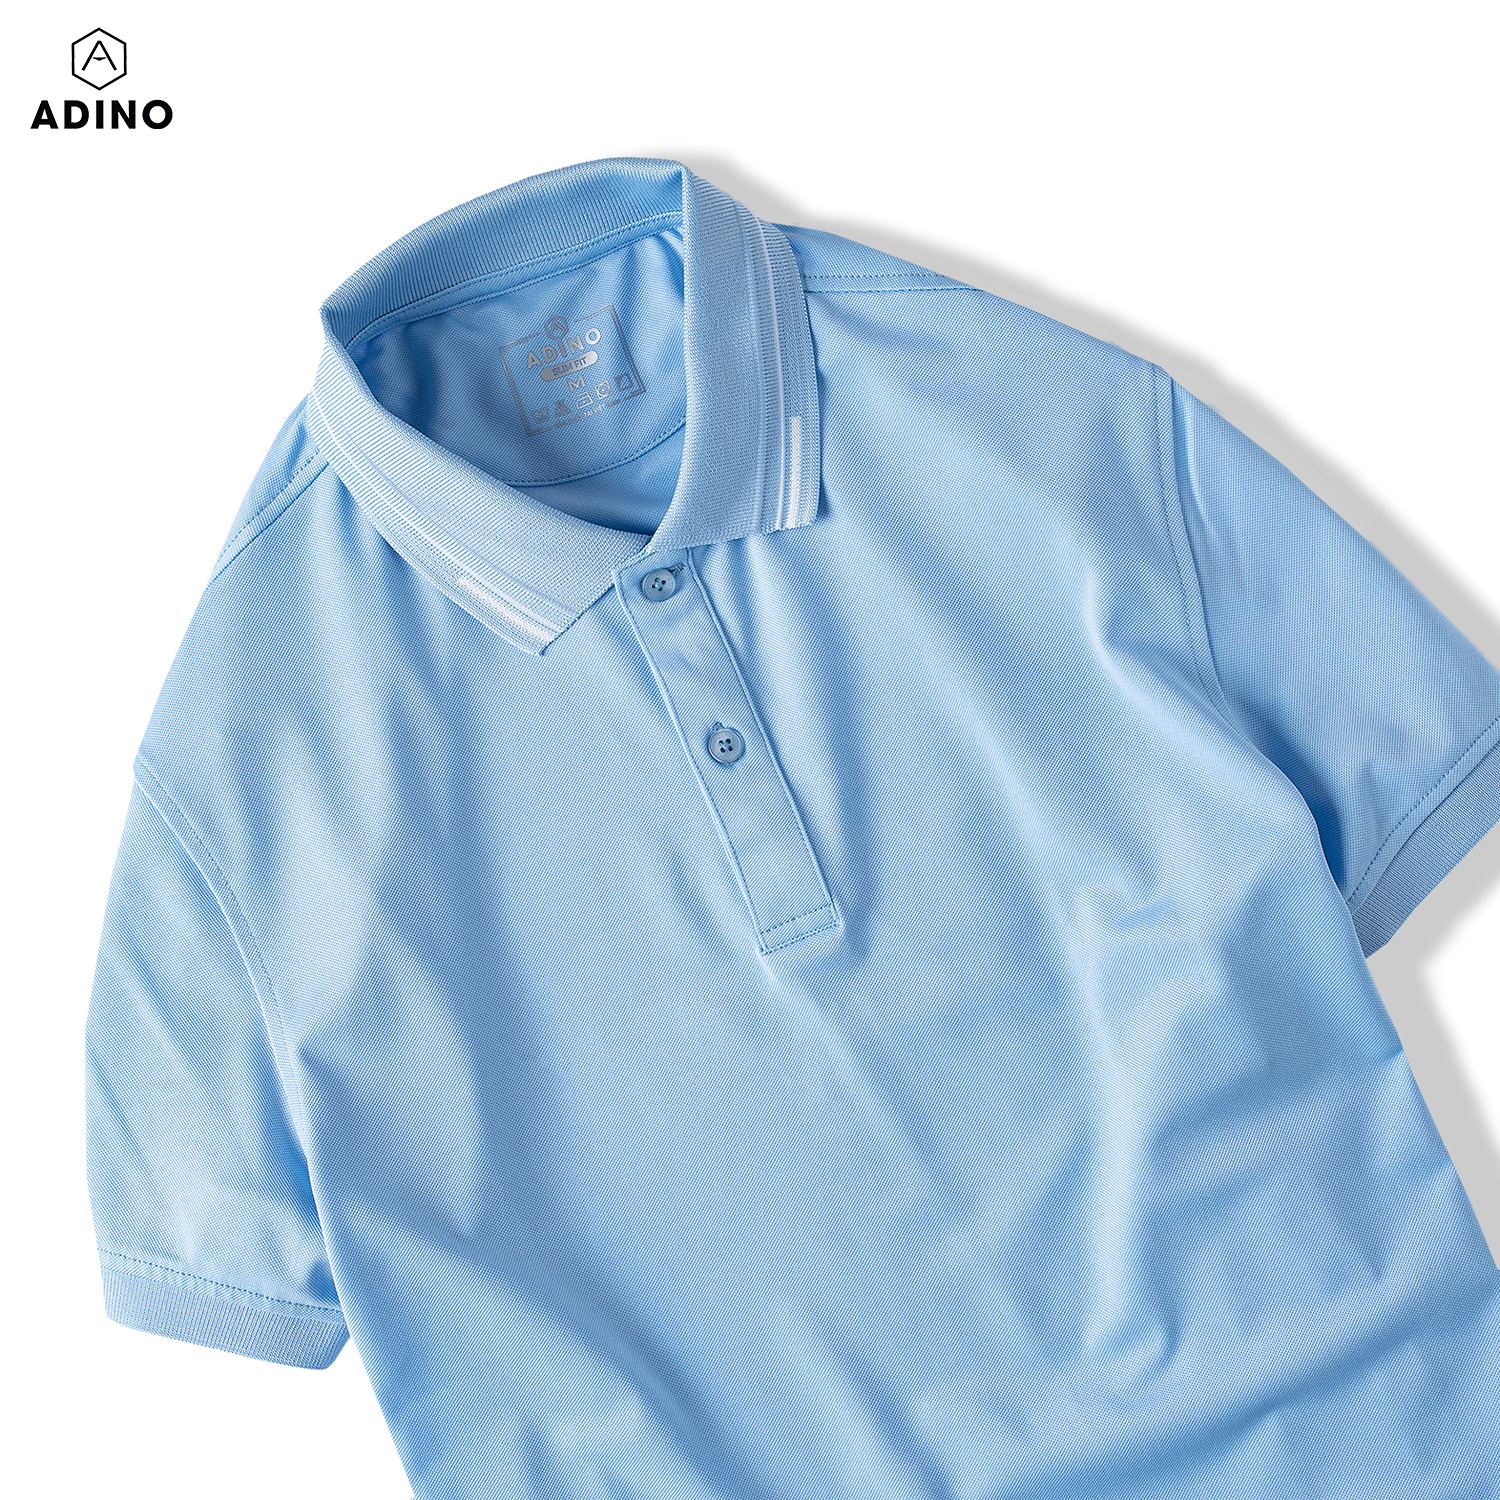 Áo polo nữ màu xanh biển phối viền ADINO vải polyester cotton không bai xù dáng slimfit công sở hơi ôm trẻ trung APN05